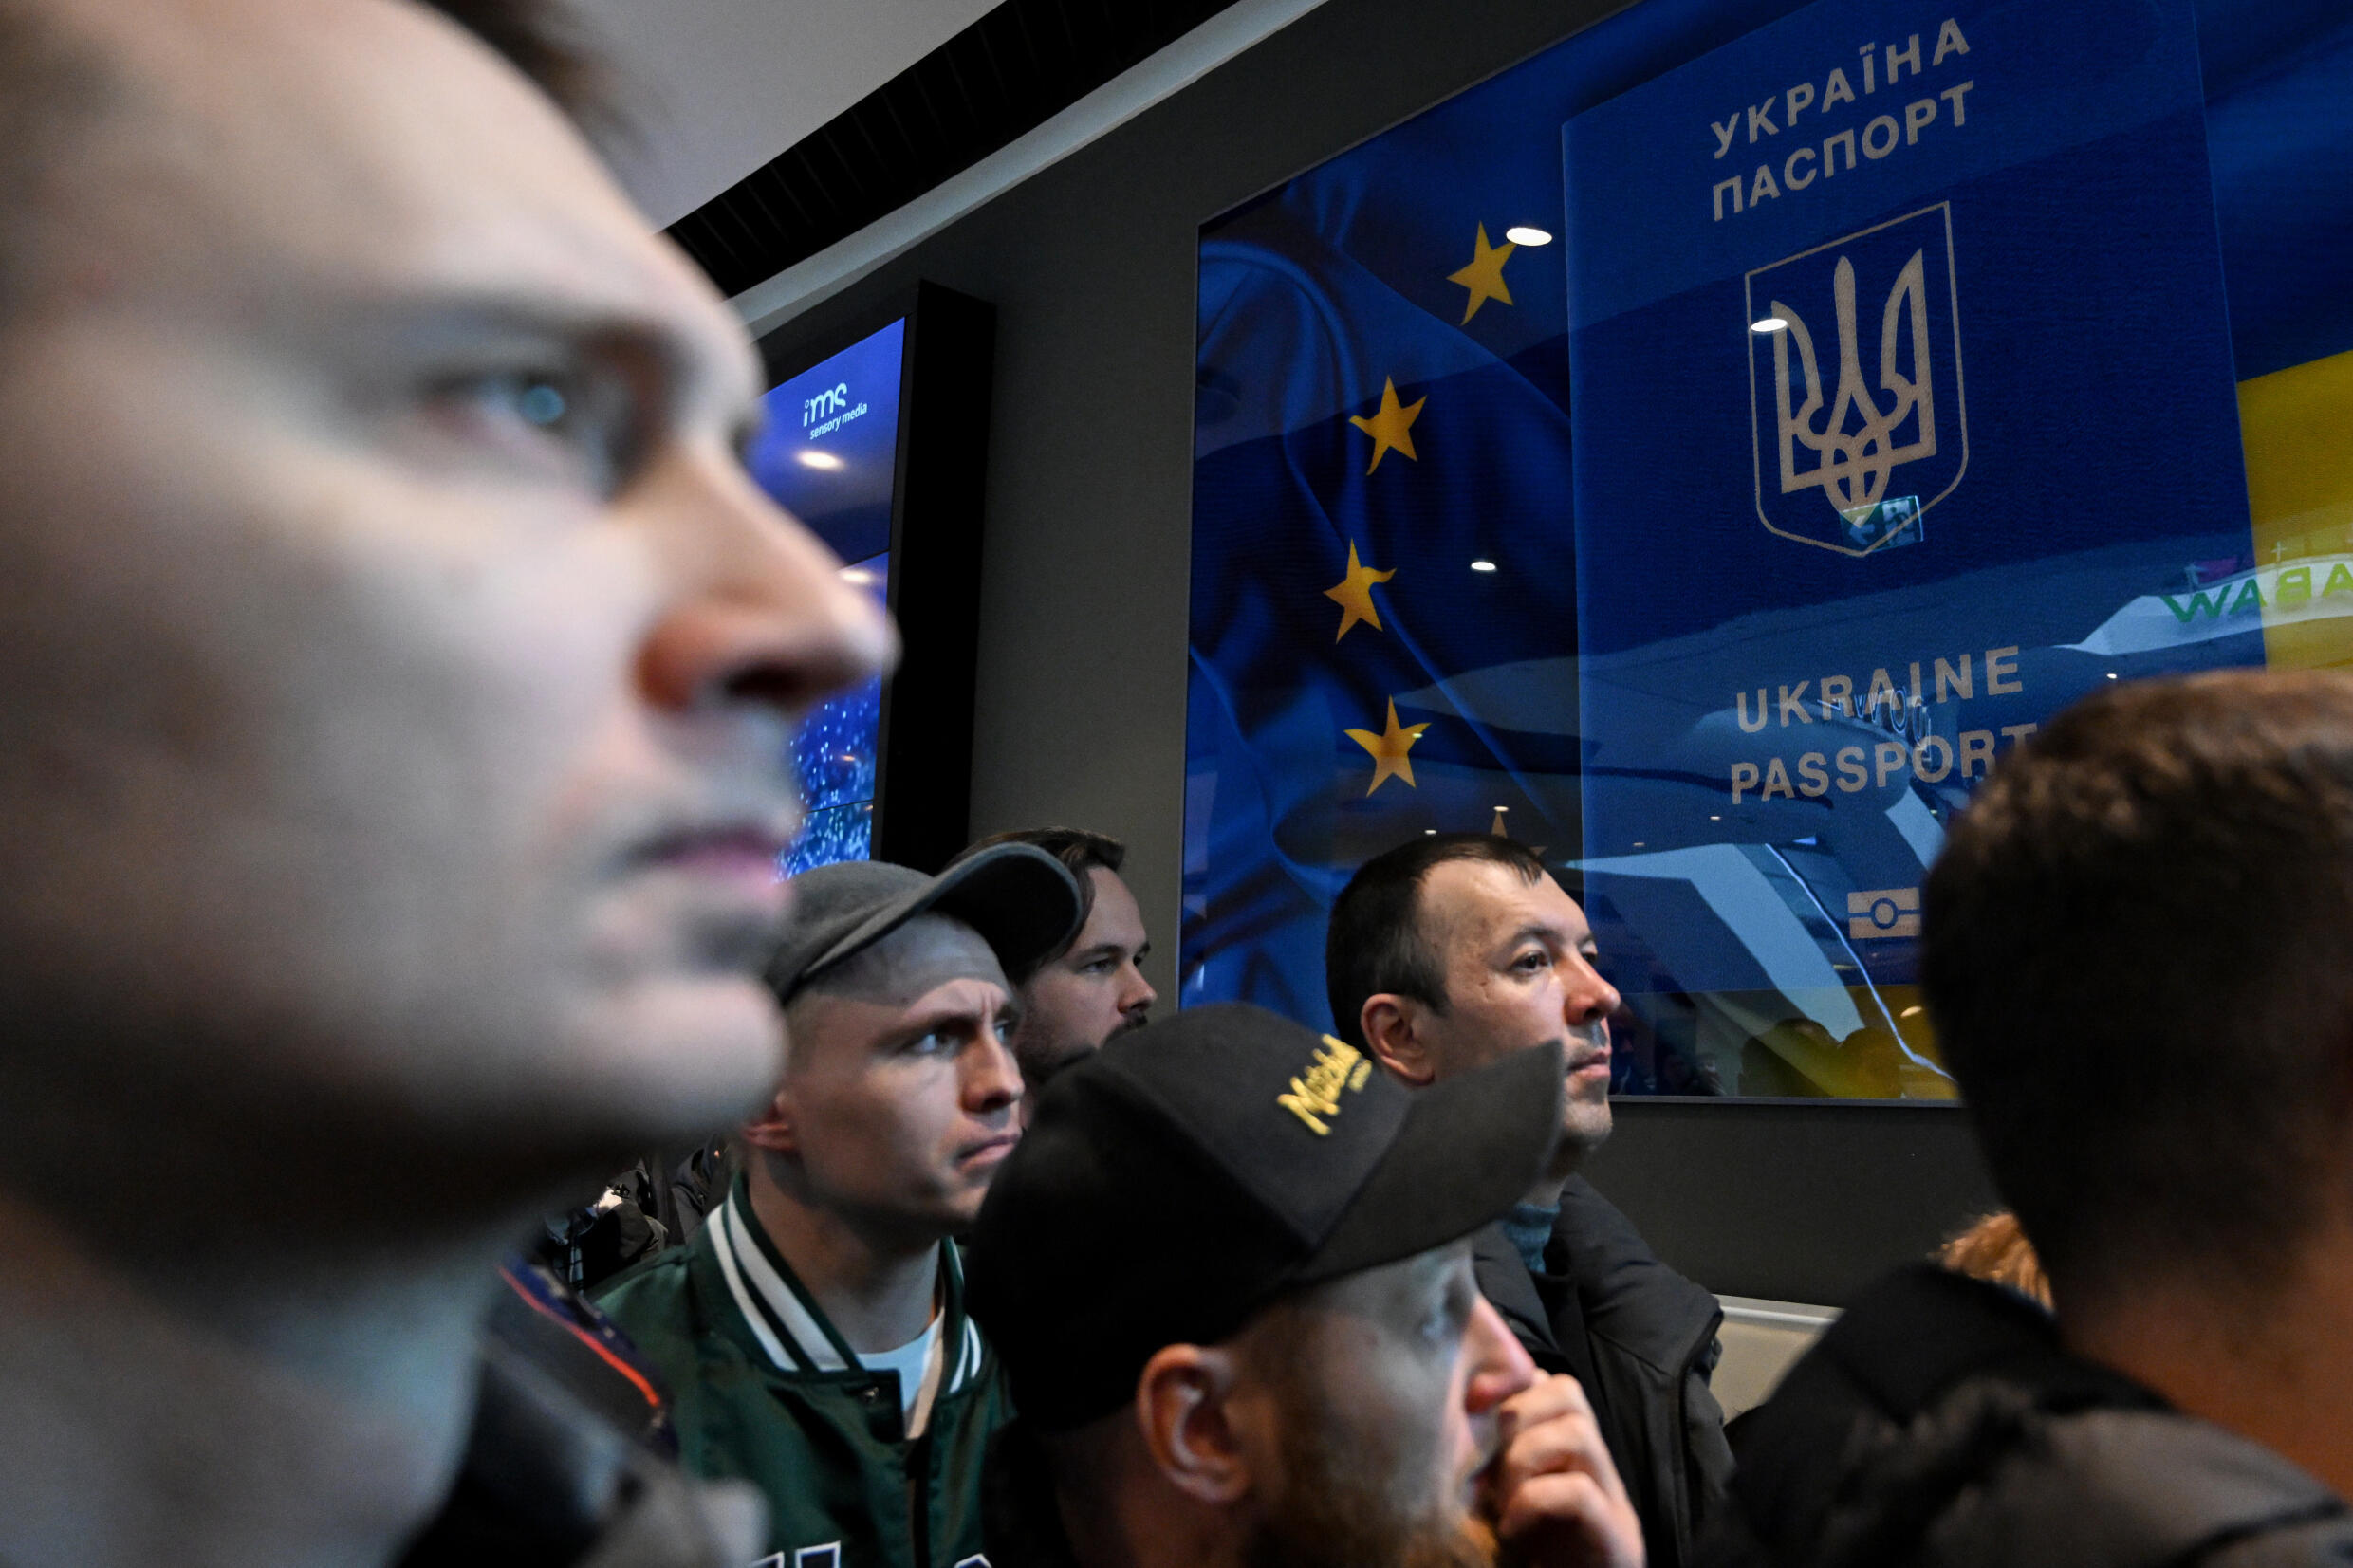 Agencja wydająca paszporty mieszkańcom Ukrainy w Warszawie za odmowę wydania obwiniła „błąd techniczny”.